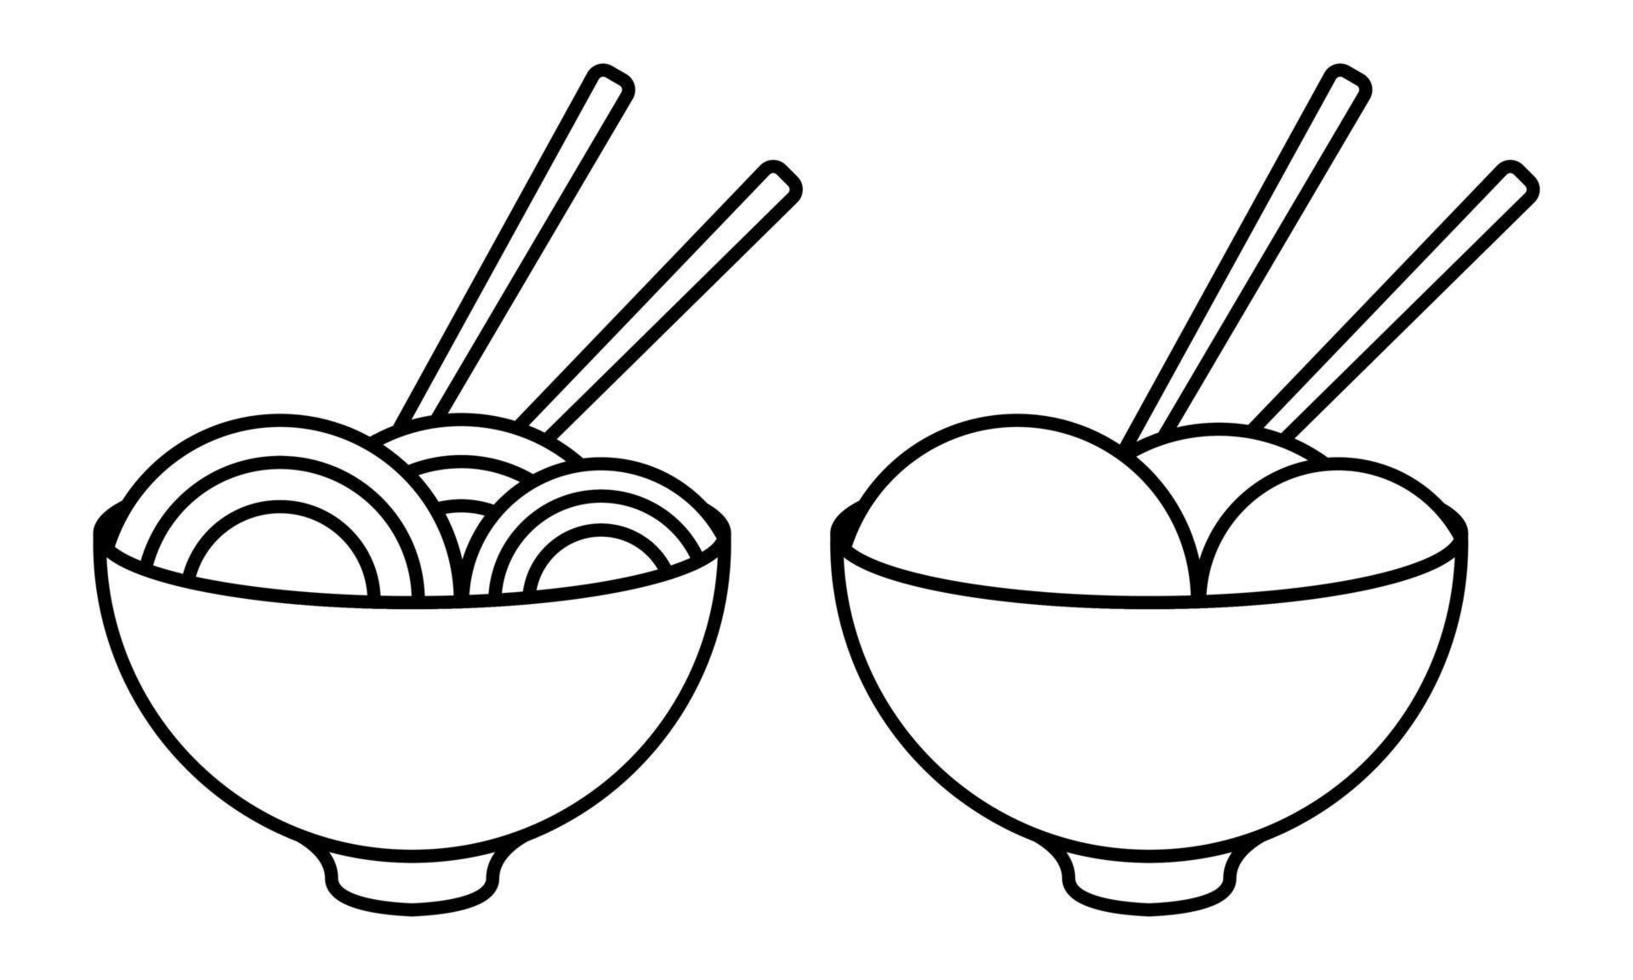 schets illustratie van noedels en gehaktballen vector